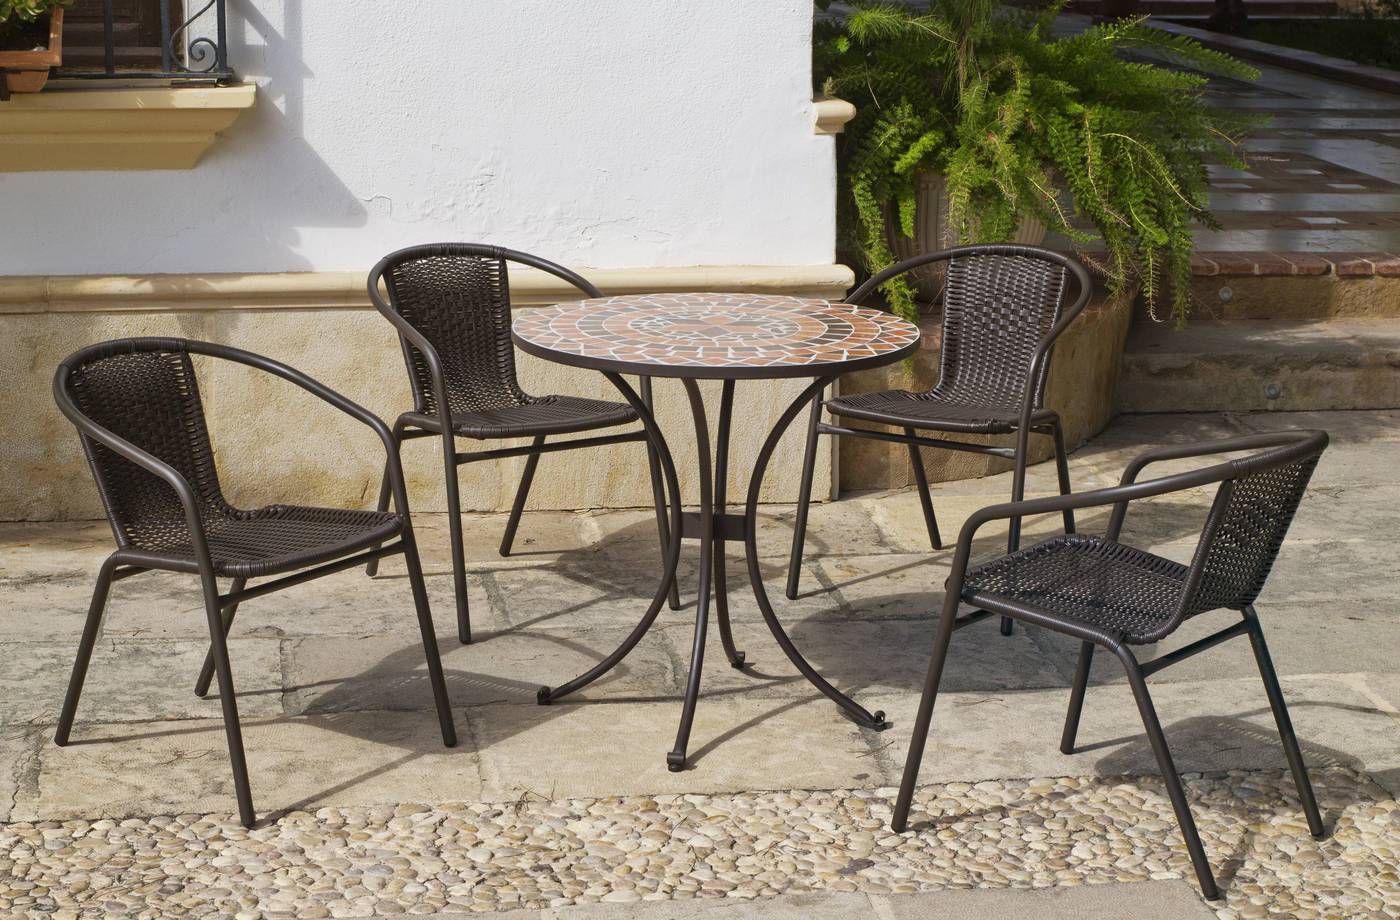 Conjunto para jardín y terraza de forja: 1 mesa con panel mosaico + 4 sillones de acero y Wicker